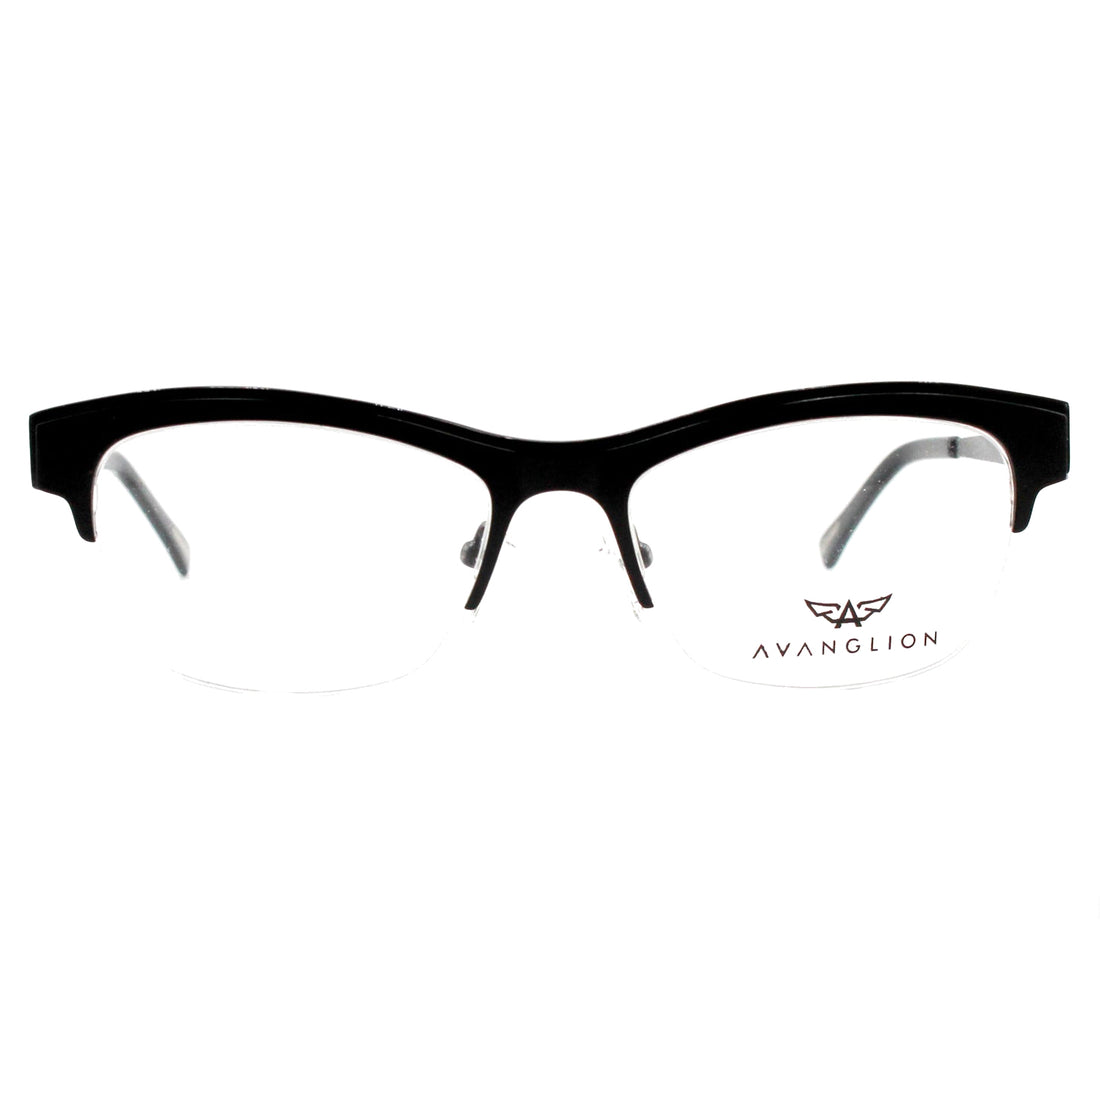 Avanglion Spectacle Frame | Model AV11390